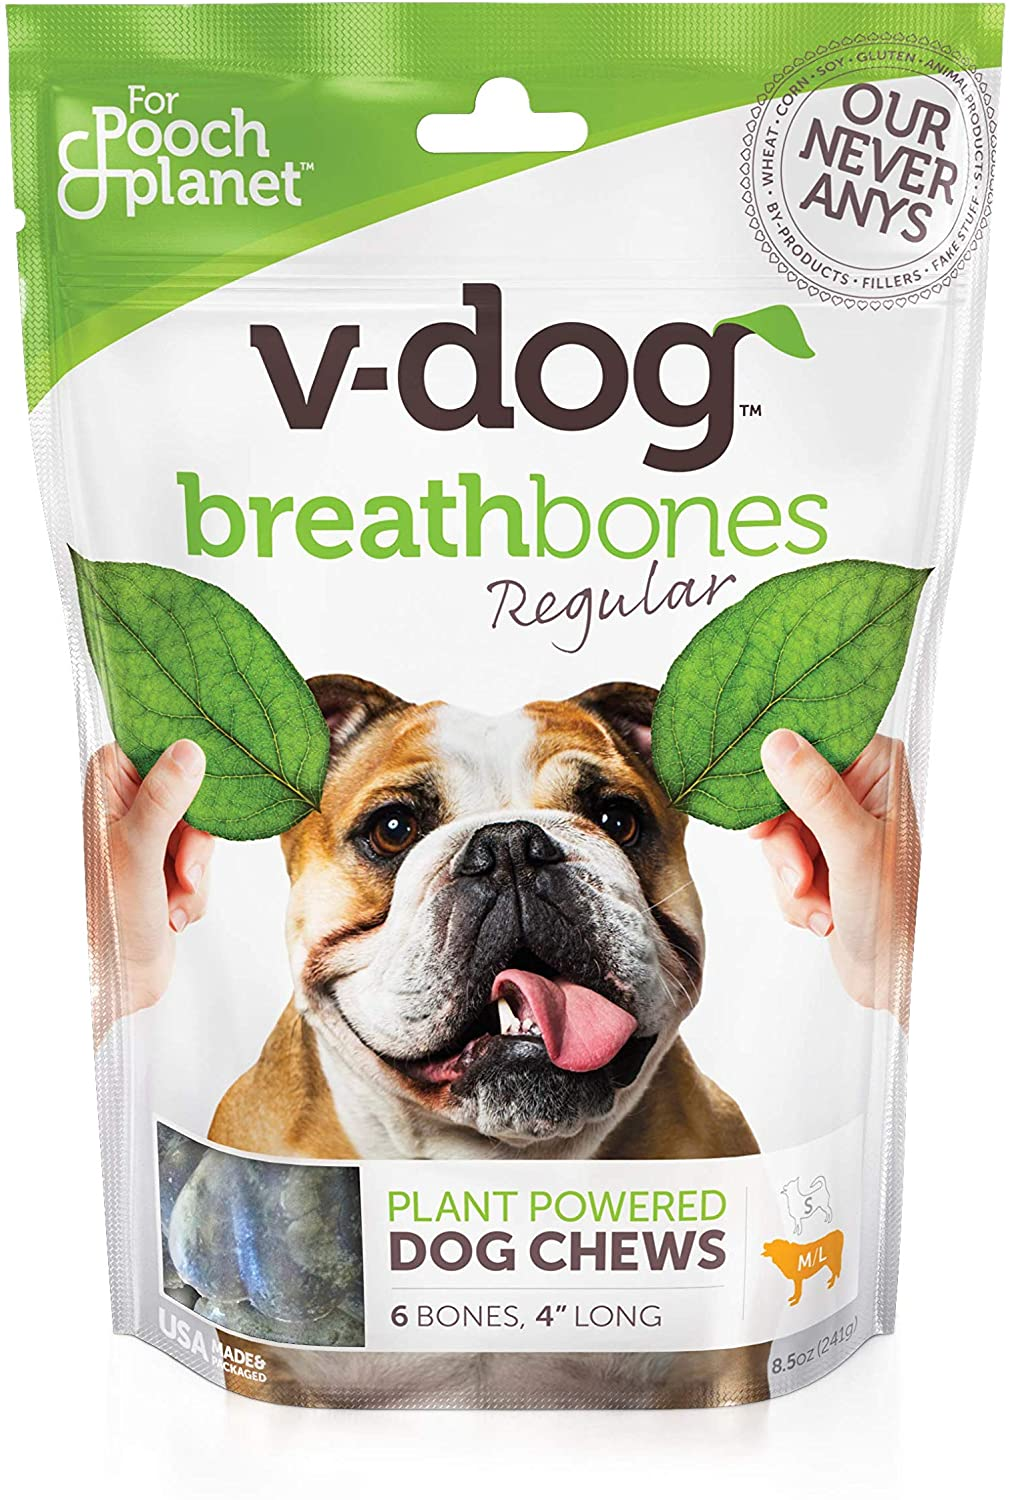 Bag of V-Dog Breathbones